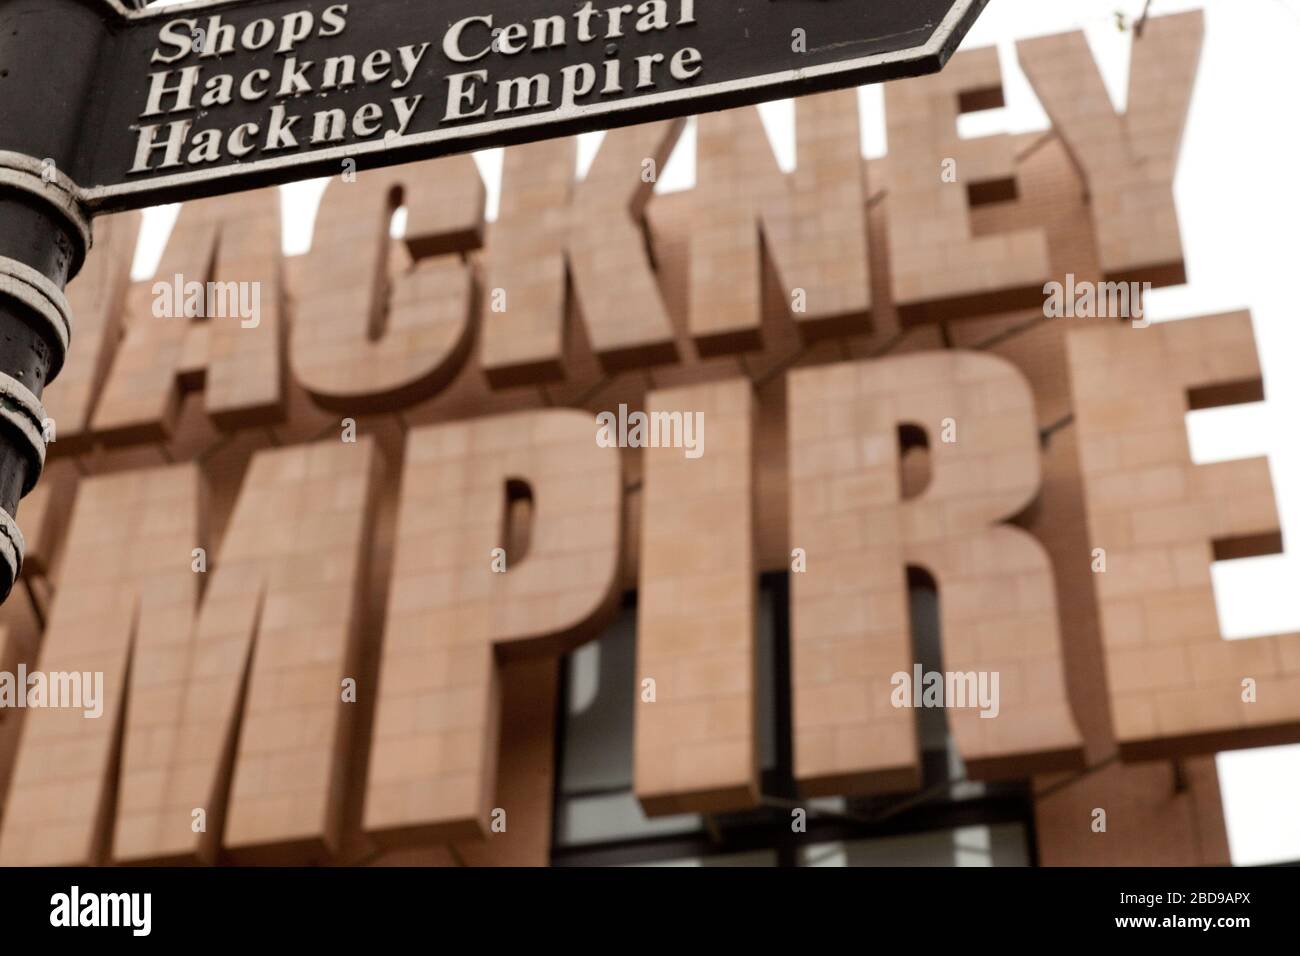 Hackney Empire, North London Stock Photo